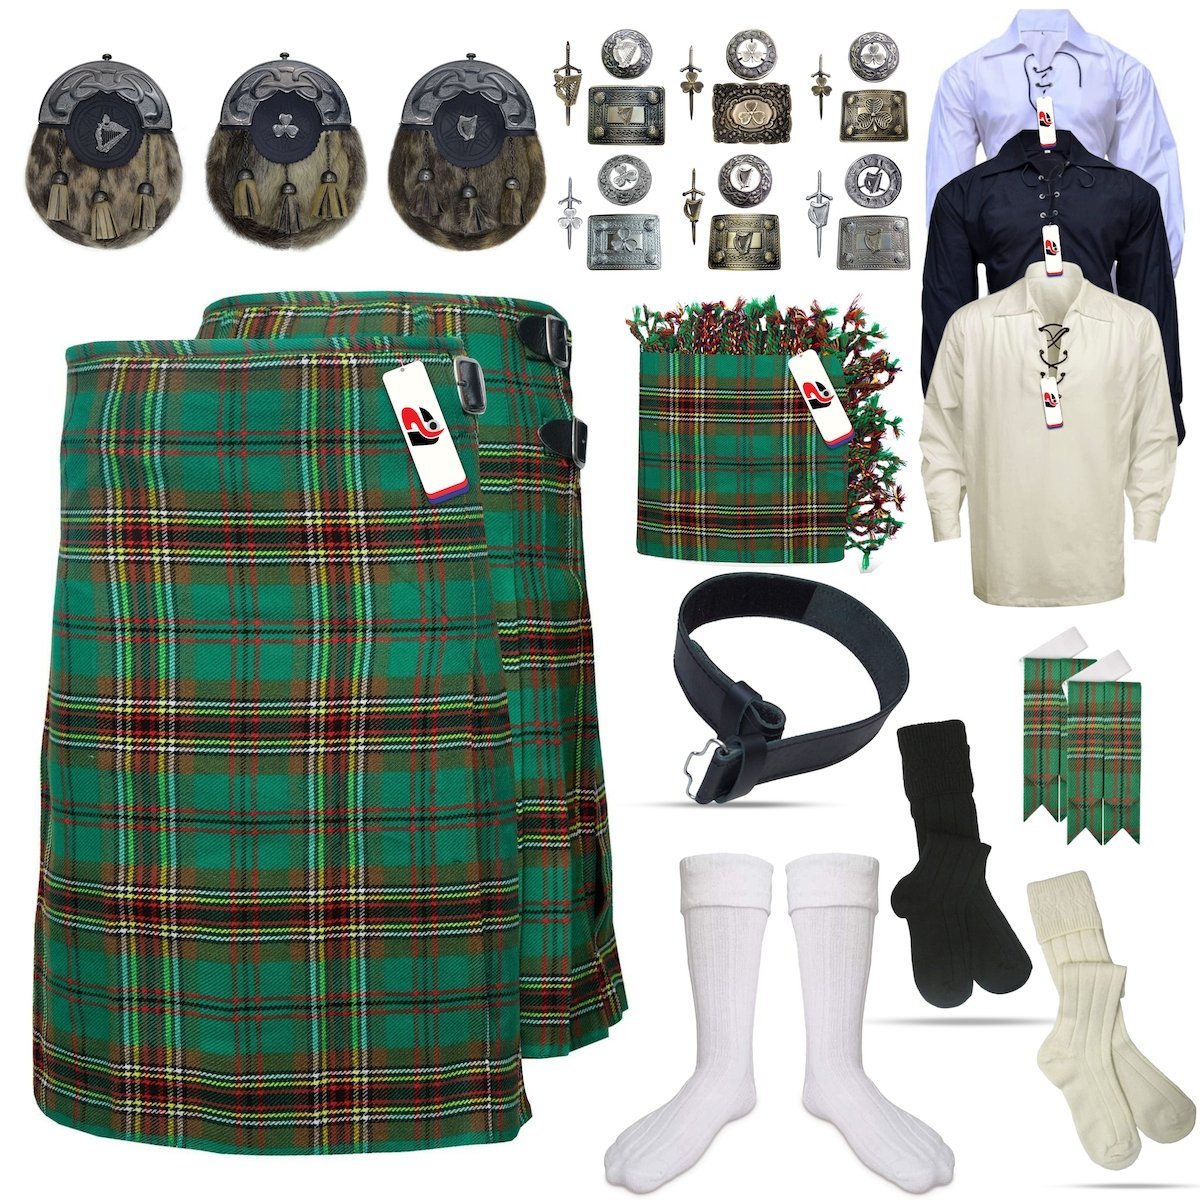 Tara Murphy Clan Tartan Kilt Outfit